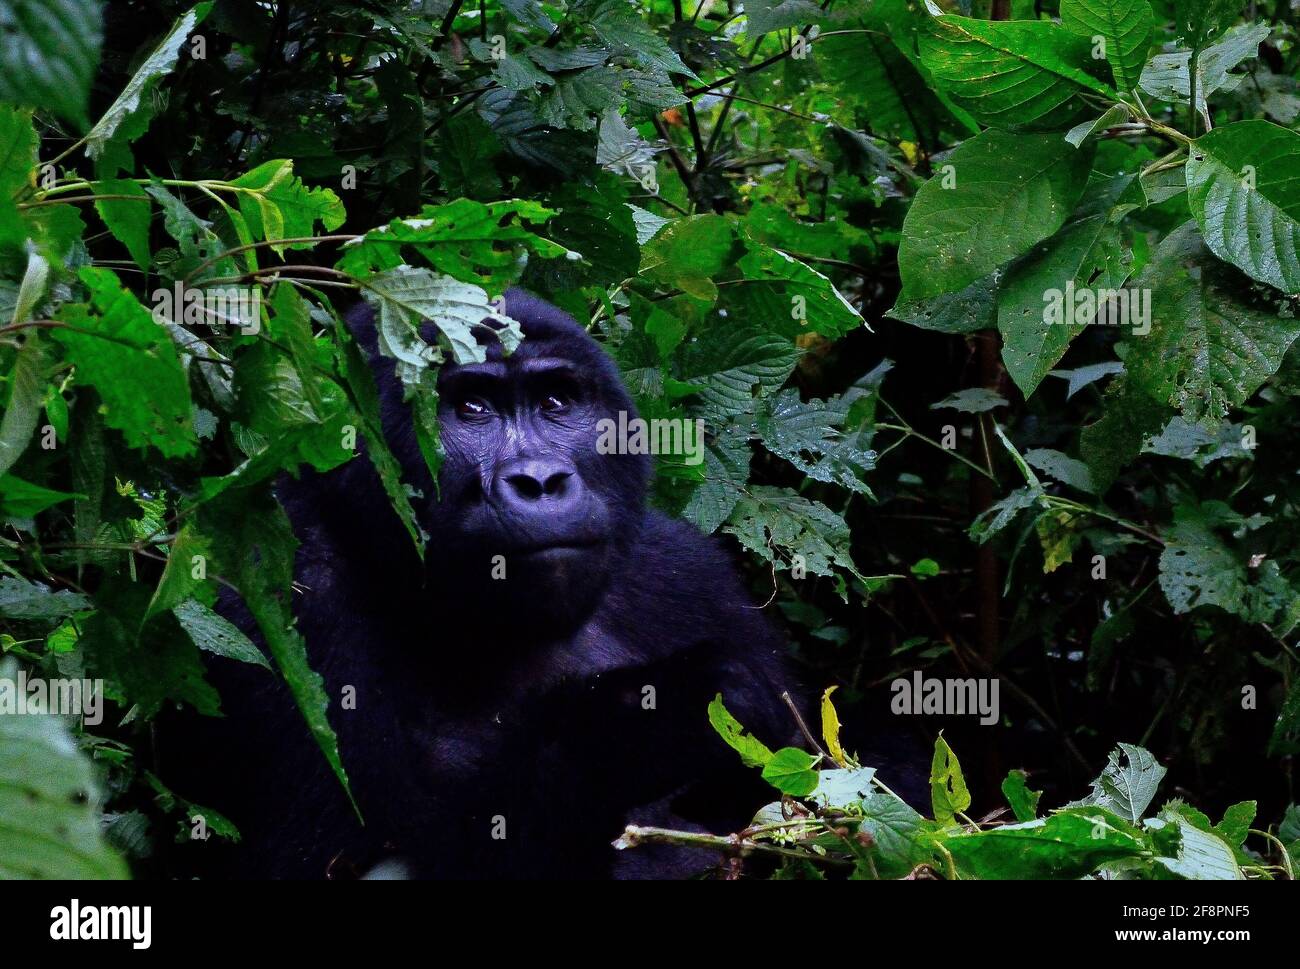 Fissando. Uno dei circa 400 Gorilla della montagna orientale in via di estinzione che vivono nell'impenetrabile Parco Nazionale di Bwindi, Uganda. Foto Stock